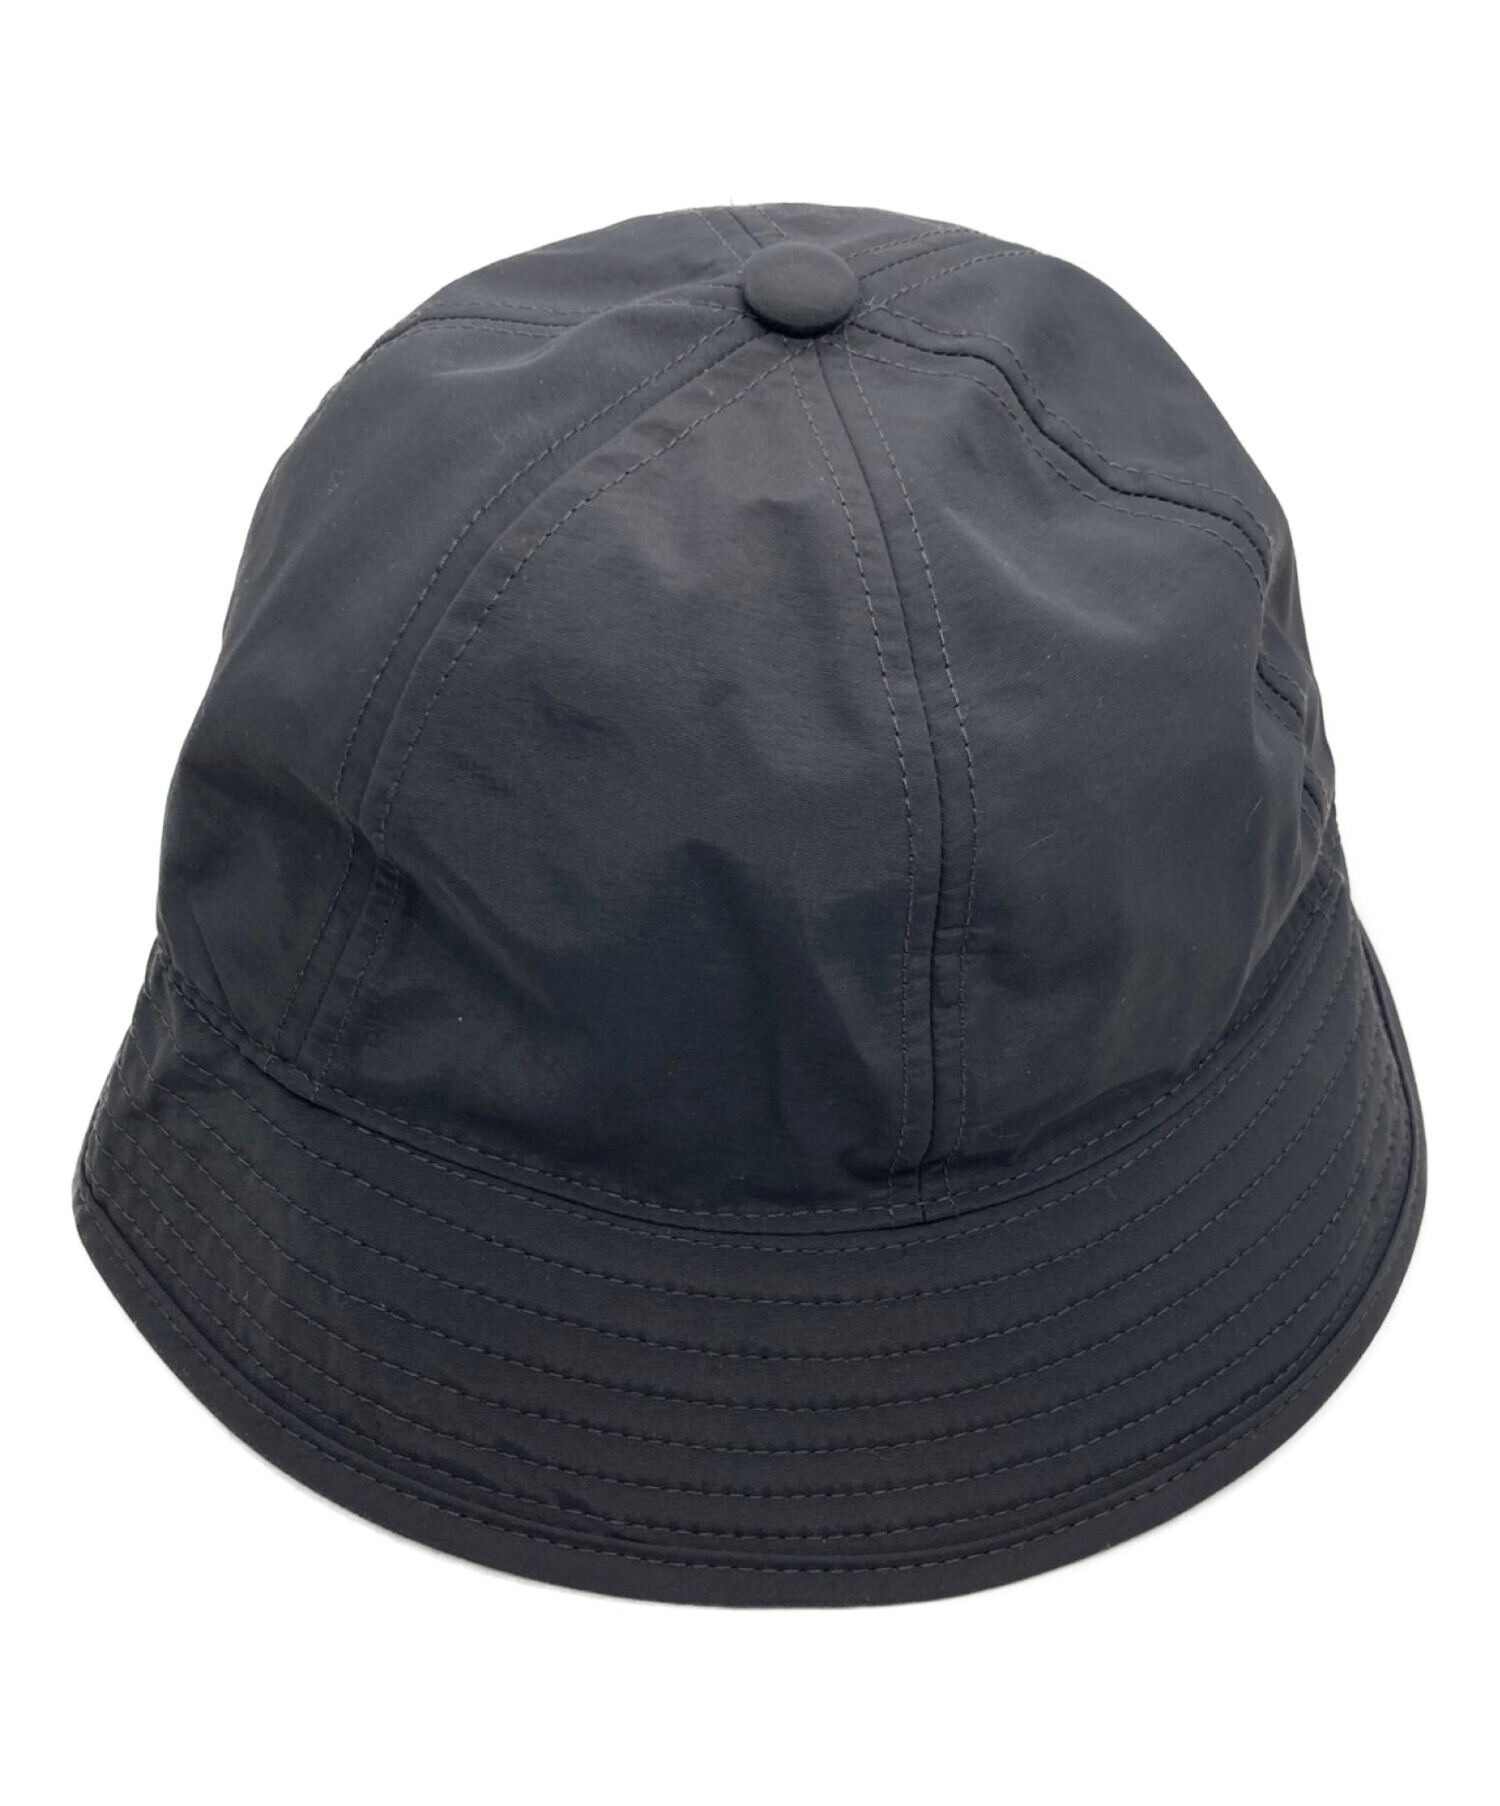 中古・古着通販】STABRIDGE (スタブリッジ) urban jones hat ブラック 